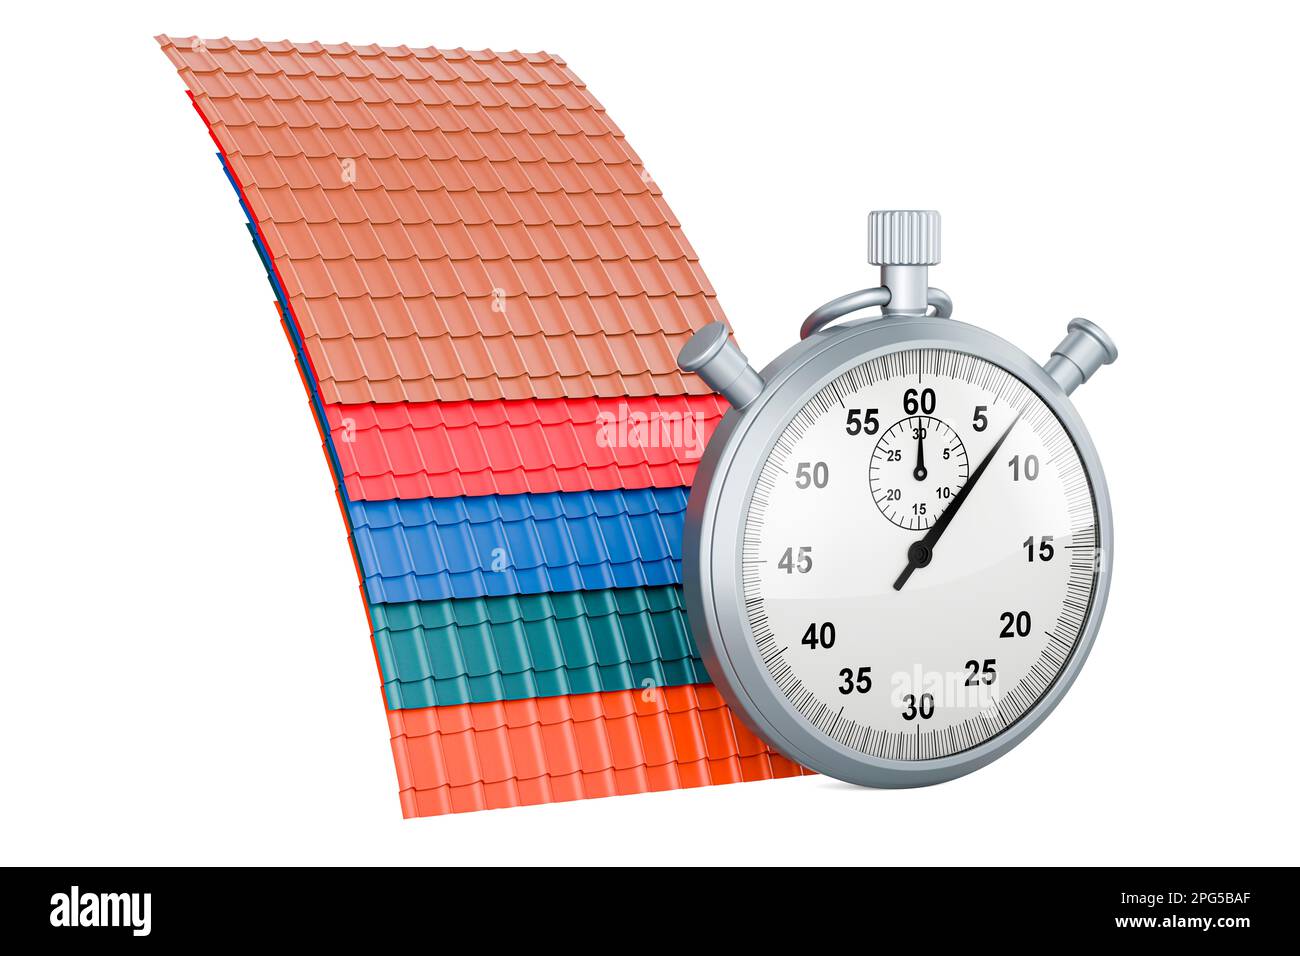 Tuiles de toit en métal de couleur avec chronomètre, rendu 3D isolé sur fond blanc Banque D'Images